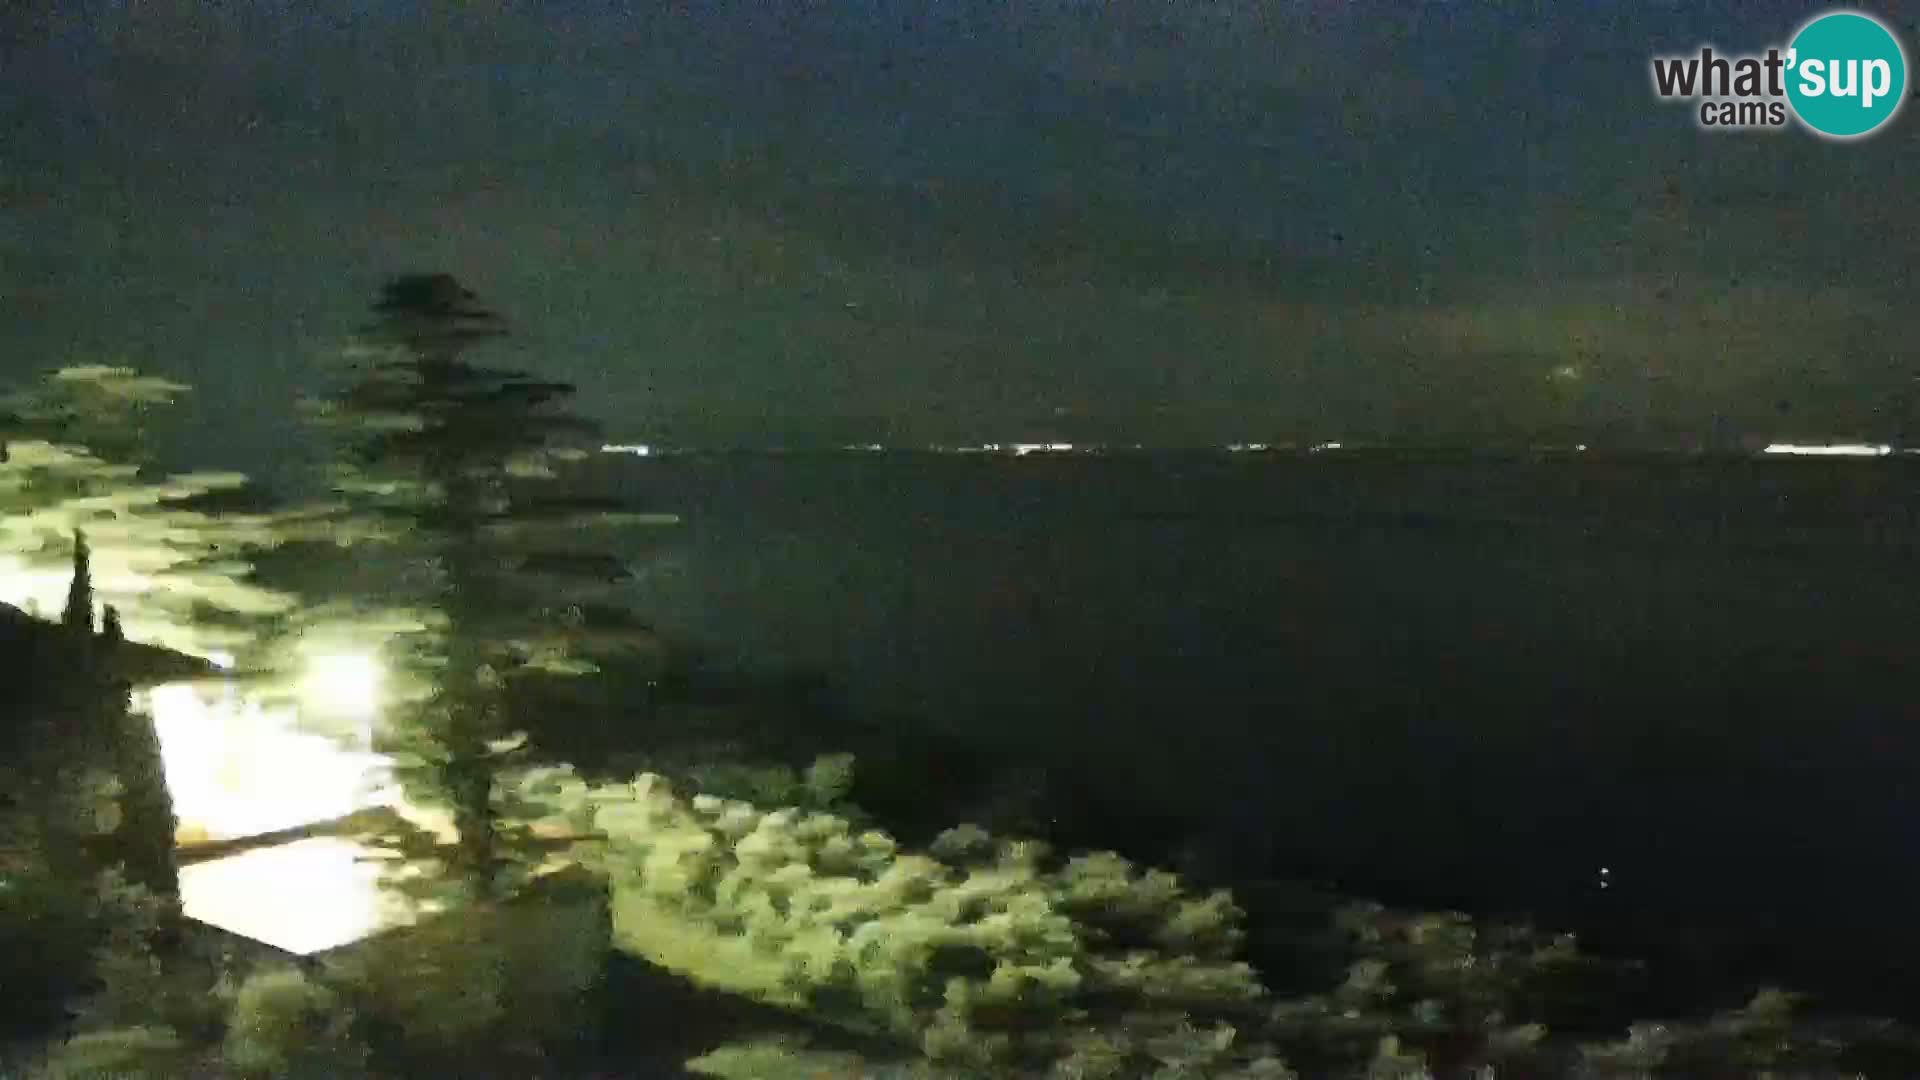 Webcam Izola – Live streaming from San Simon beach